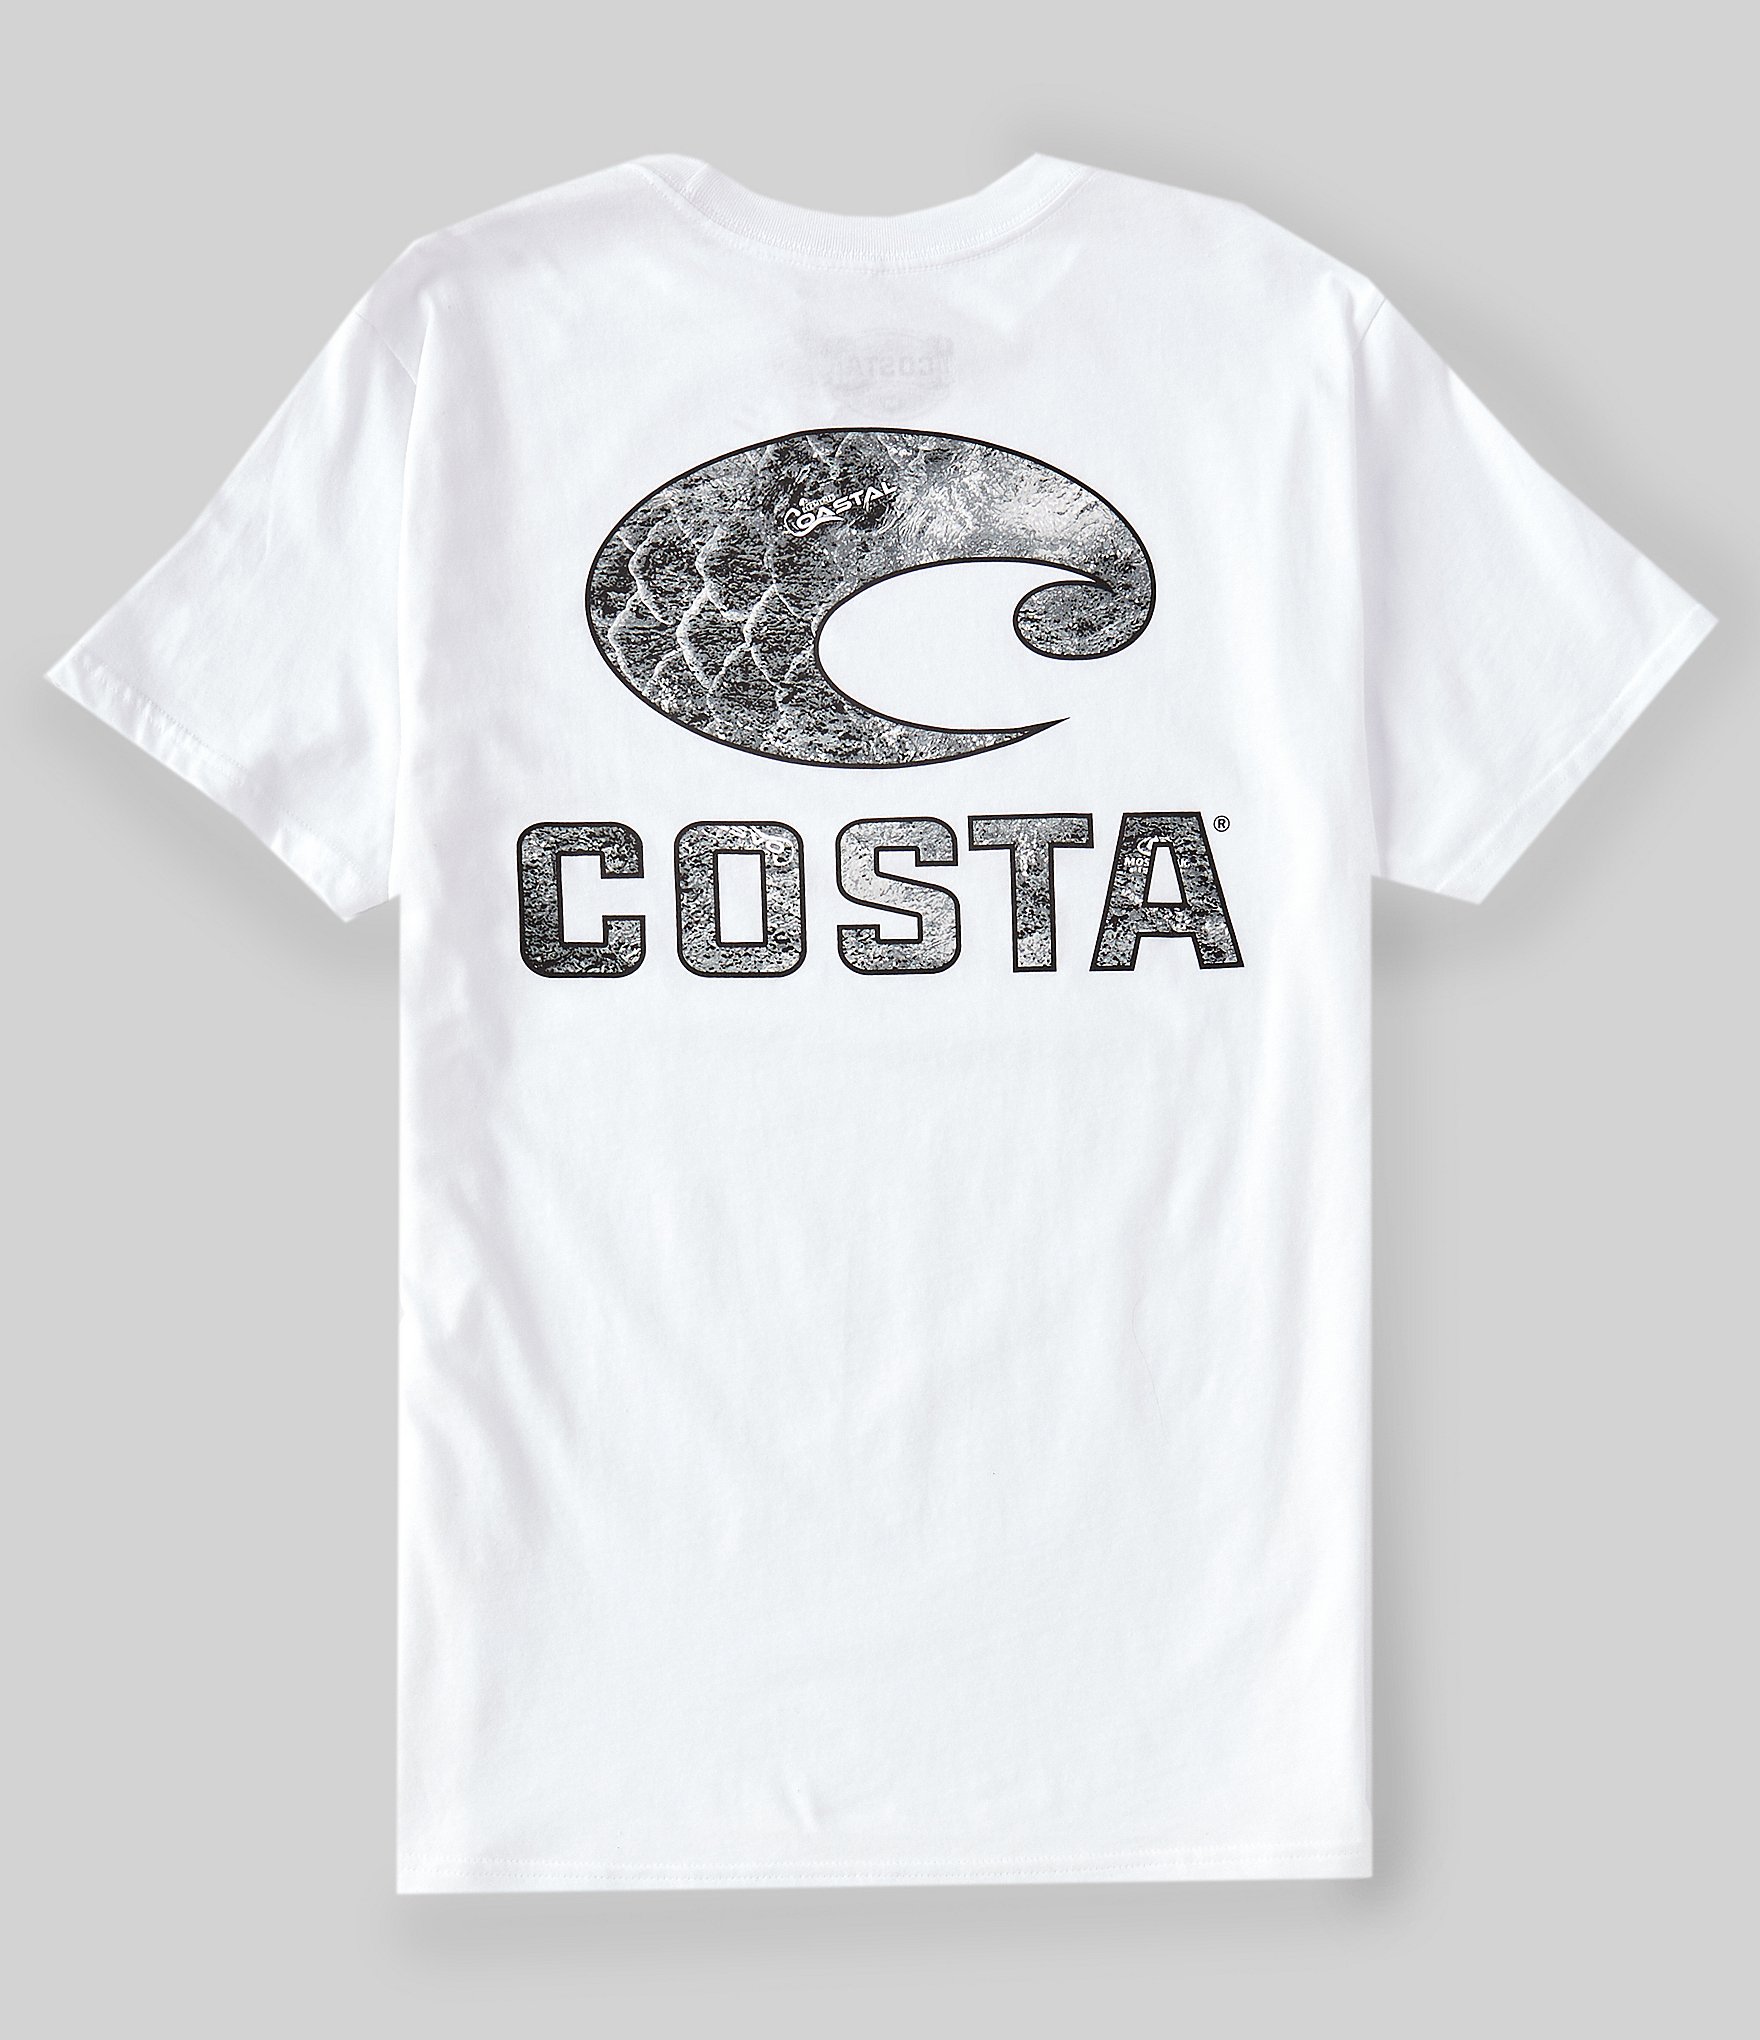 Costa Men's Topwater Short Sleeve Shirt, Medium, Chill